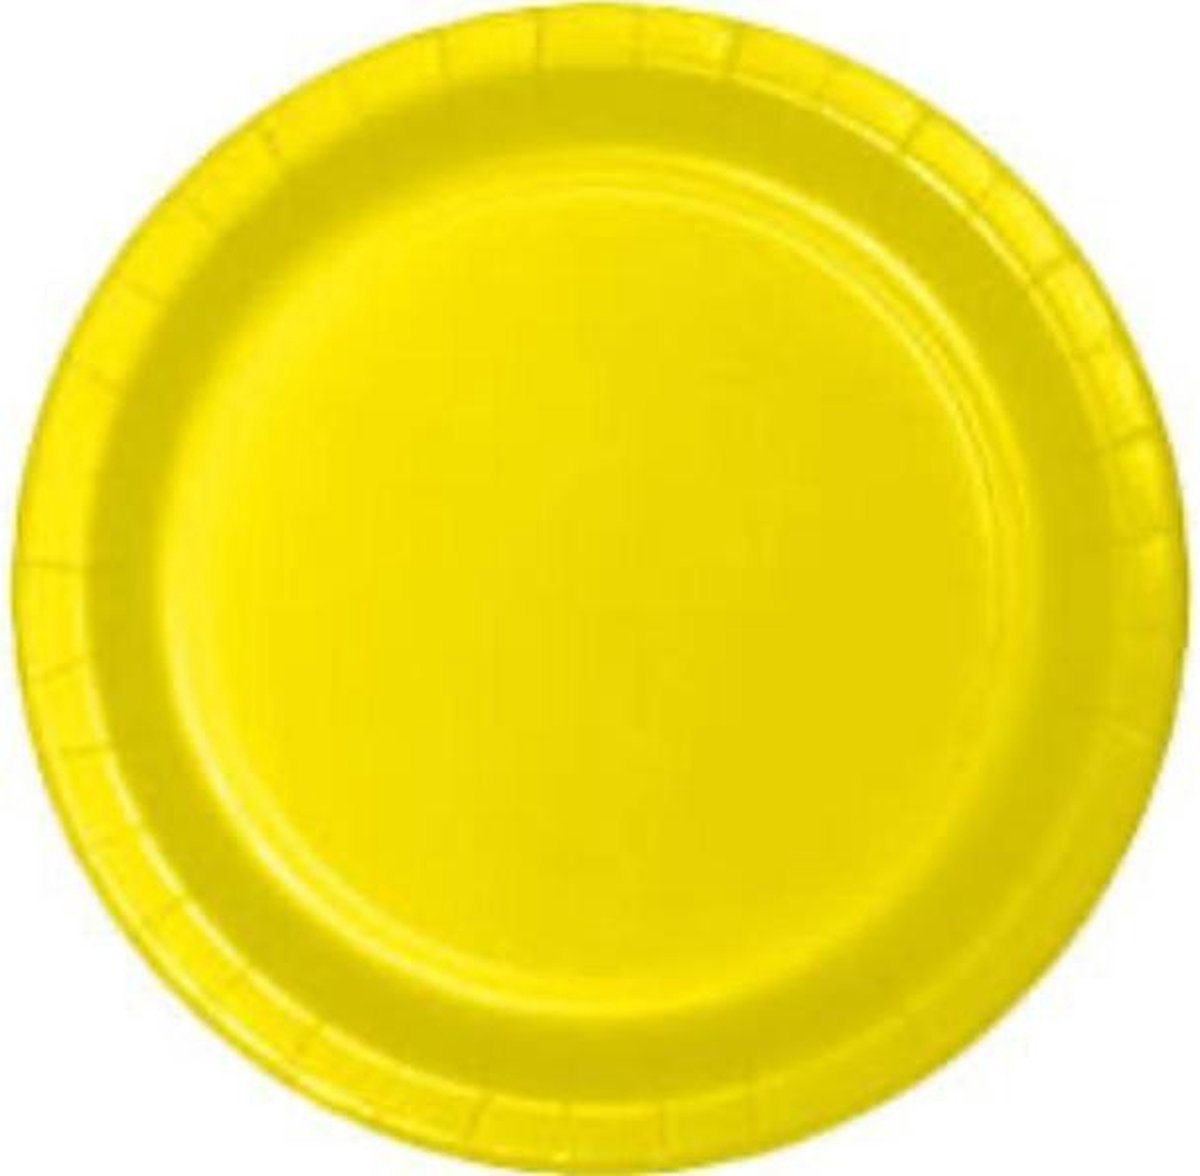 Kartonnen Bordjes geel 23cm 20st - Wegwerp borden - Feest/verjaardag/BBQ borden